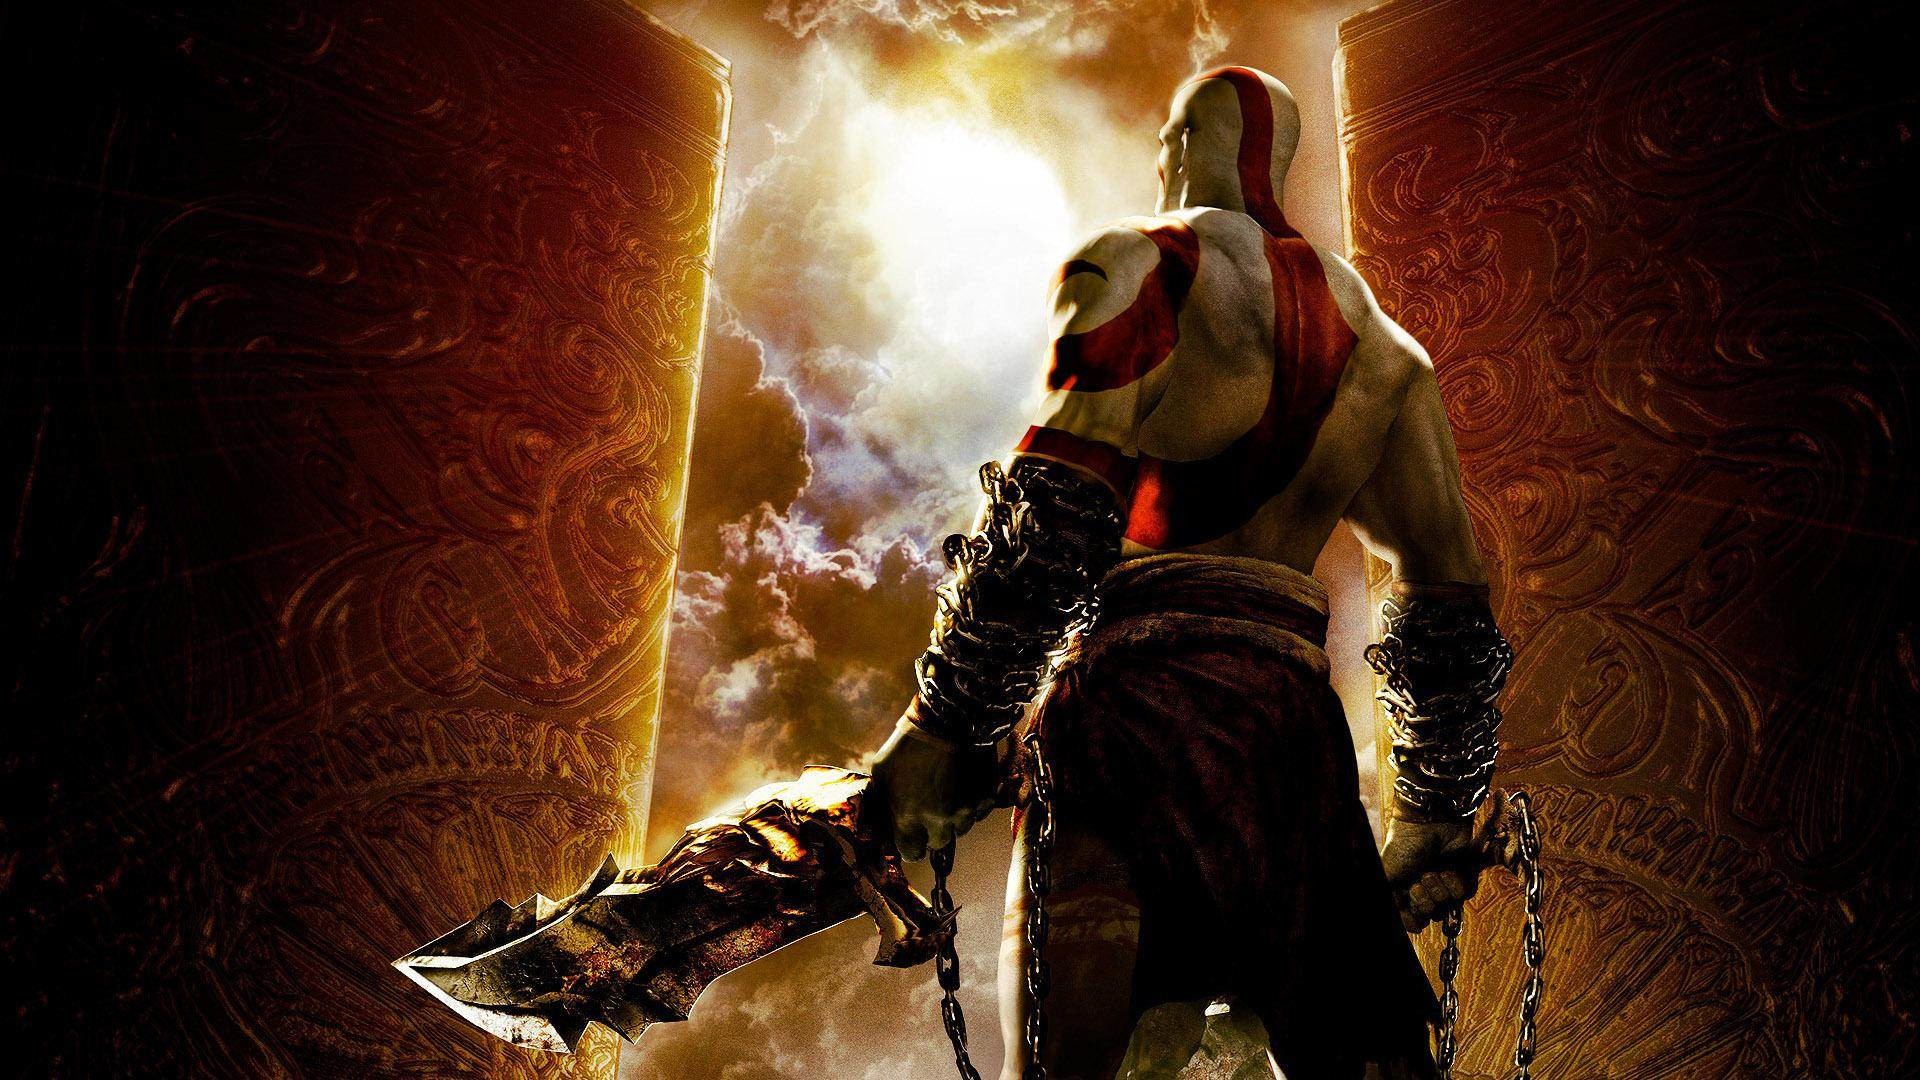 kratos wallpaper,gioco di avventura e azione,gioco per pc,cg artwork,personaggio fittizio,film